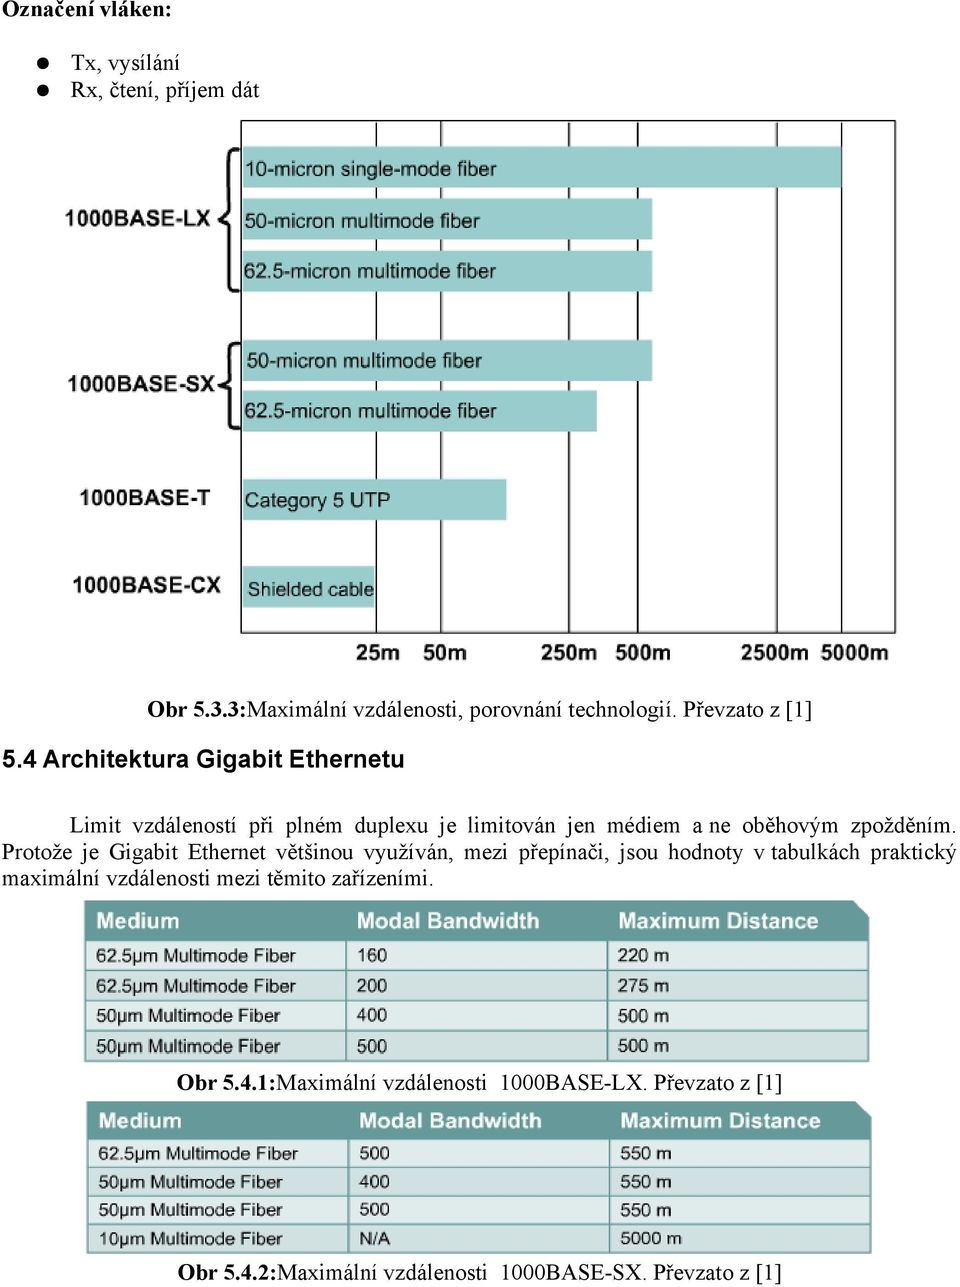 Protože je Gigabit Ethernet většinou využíván, mezi přepínači, jsou hodnoty v tabulkách praktický maximální vzdálenosti mezi